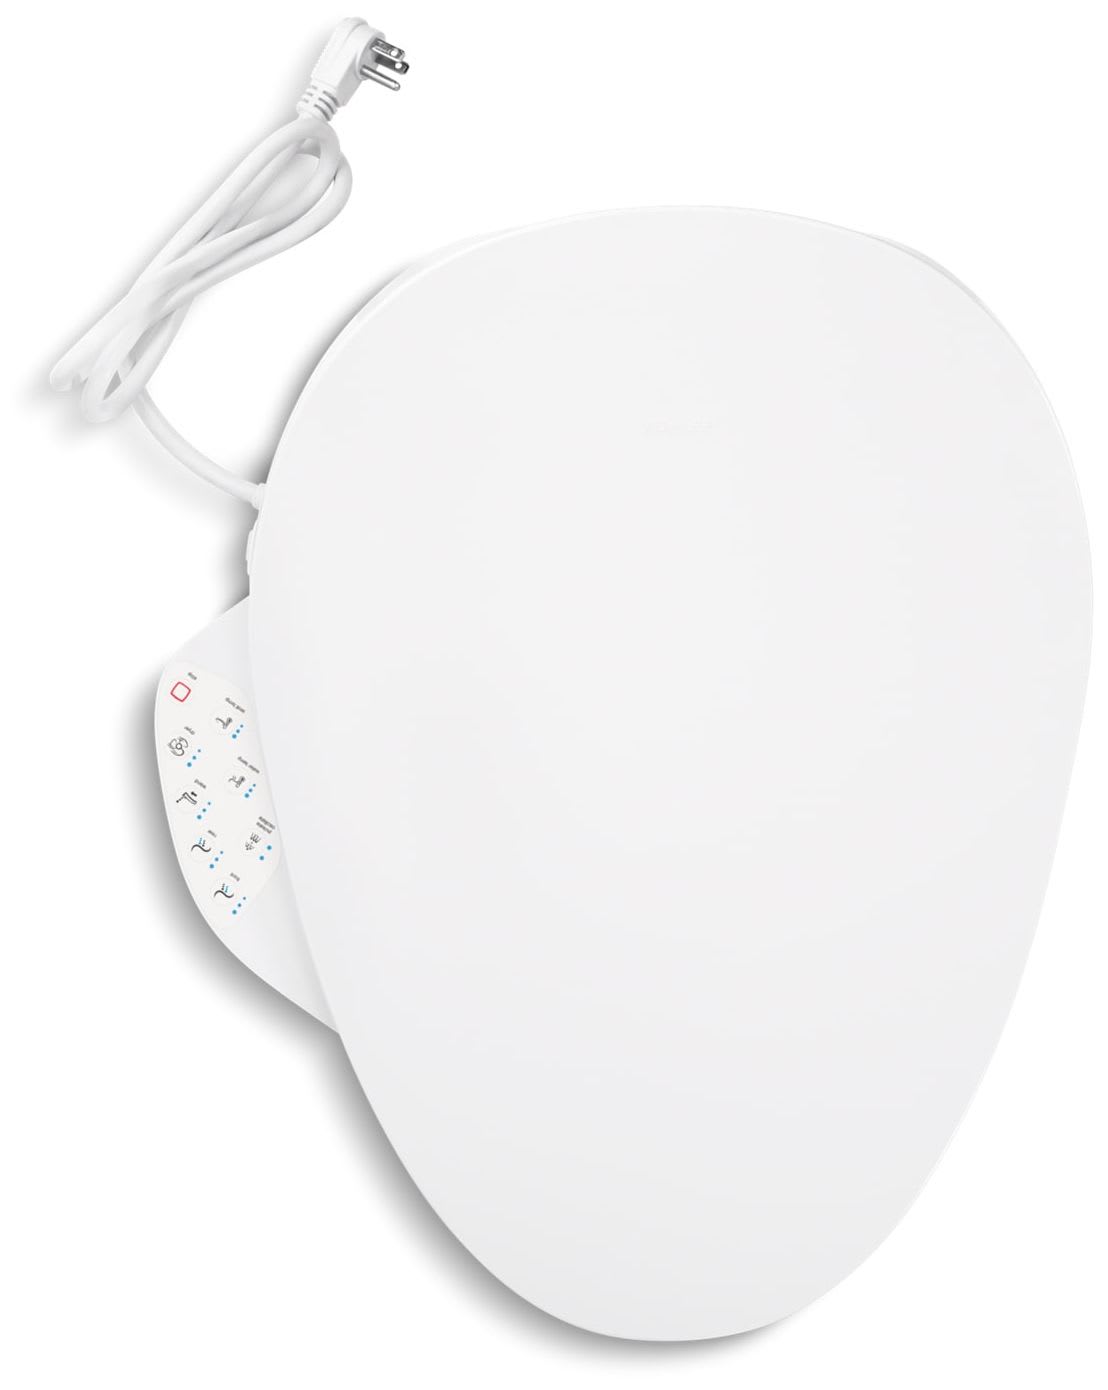 Kohler K-4108-0 C3 230 Elongated Bidet Toilet Seat with Touchscreen Remote White